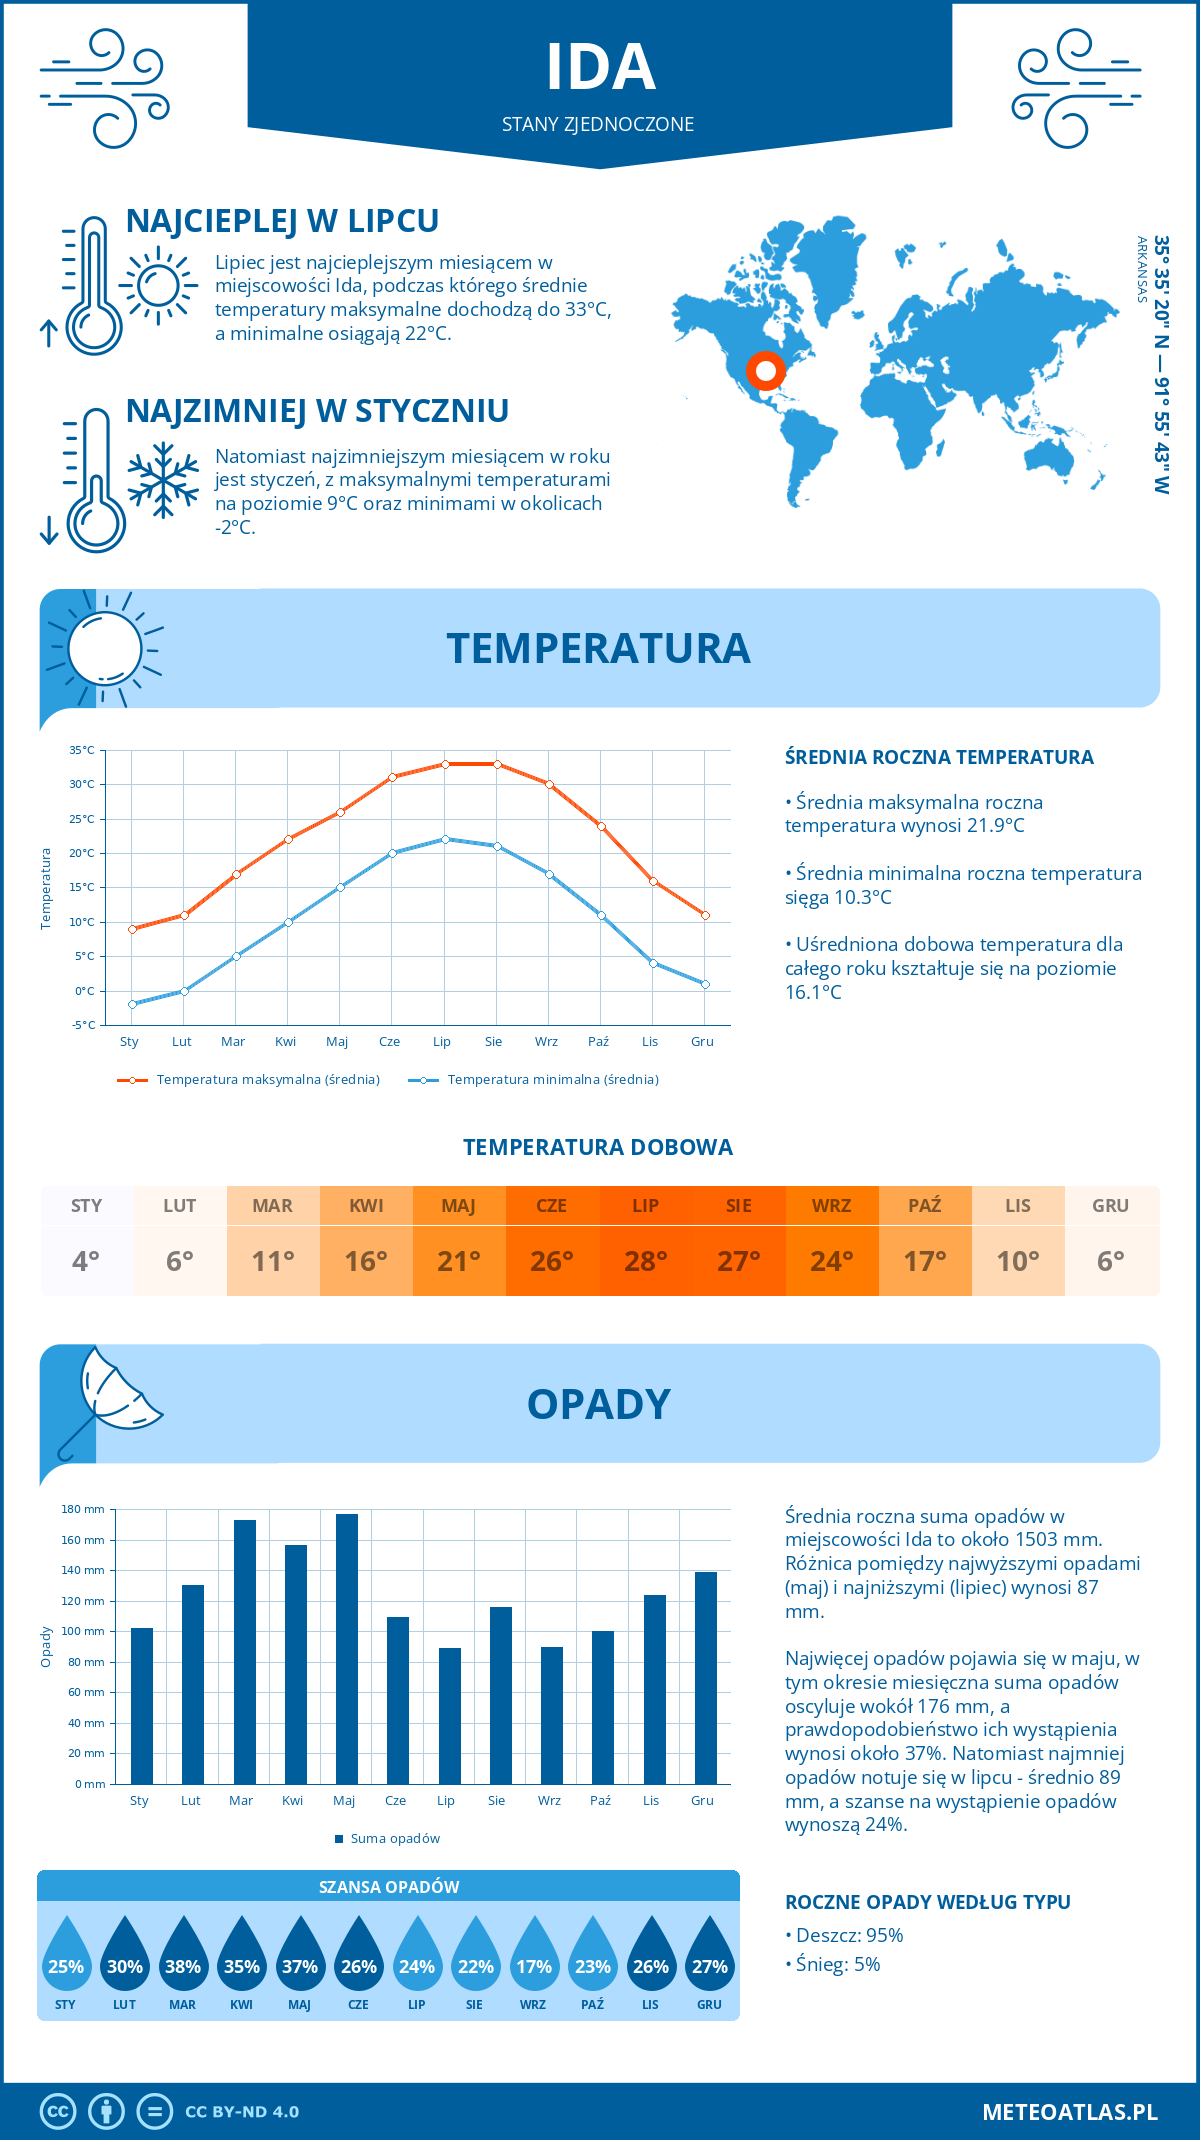 Pogoda Ida (Stany Zjednoczone). Temperatura oraz opady.